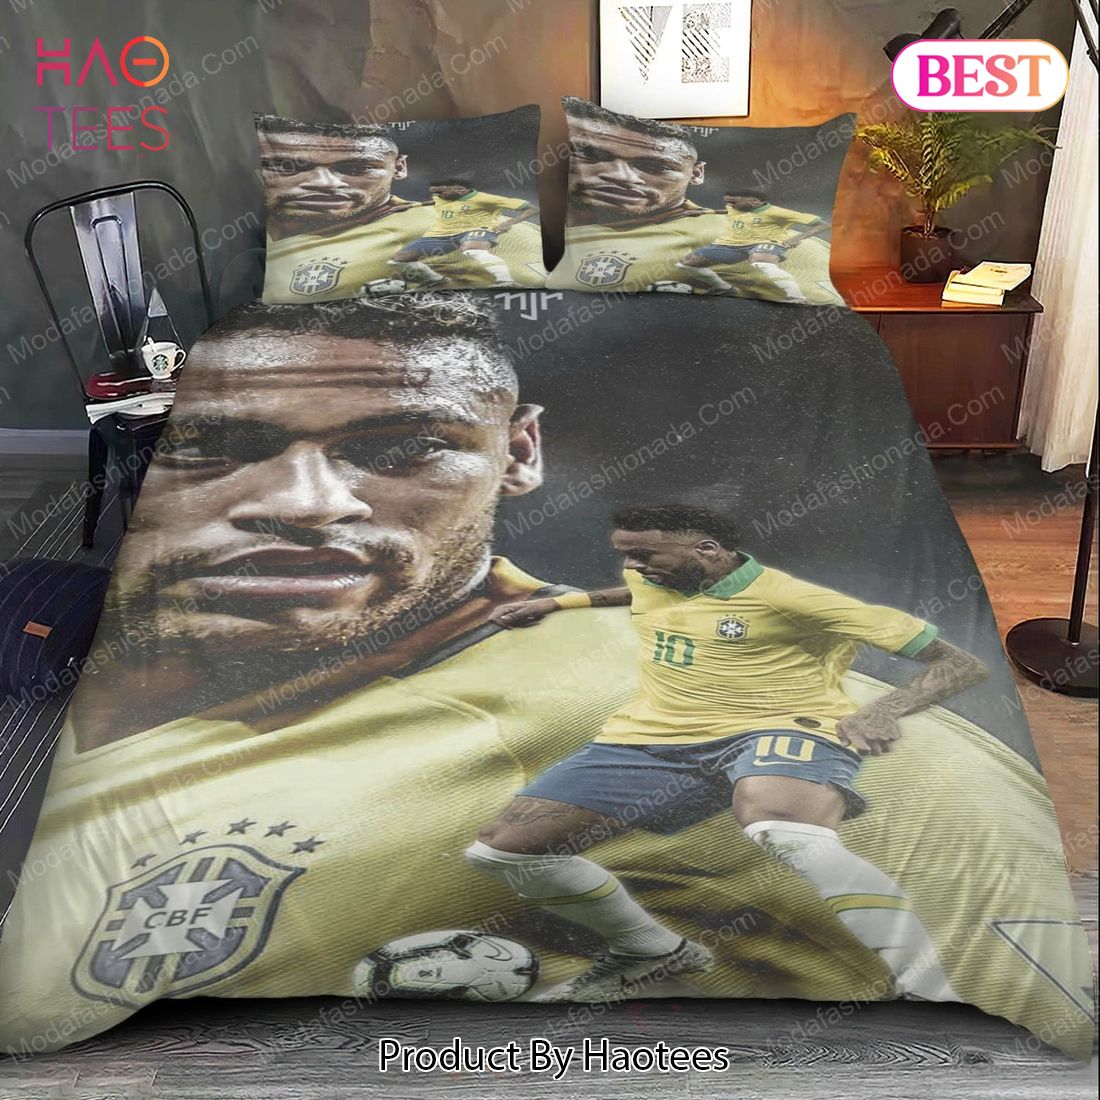 [AVAILABLE] Neymar Brazil Bedding Sets Bed Sets, Bedroom Sets, Comforter Sets, Duvet Cover, Bedspread